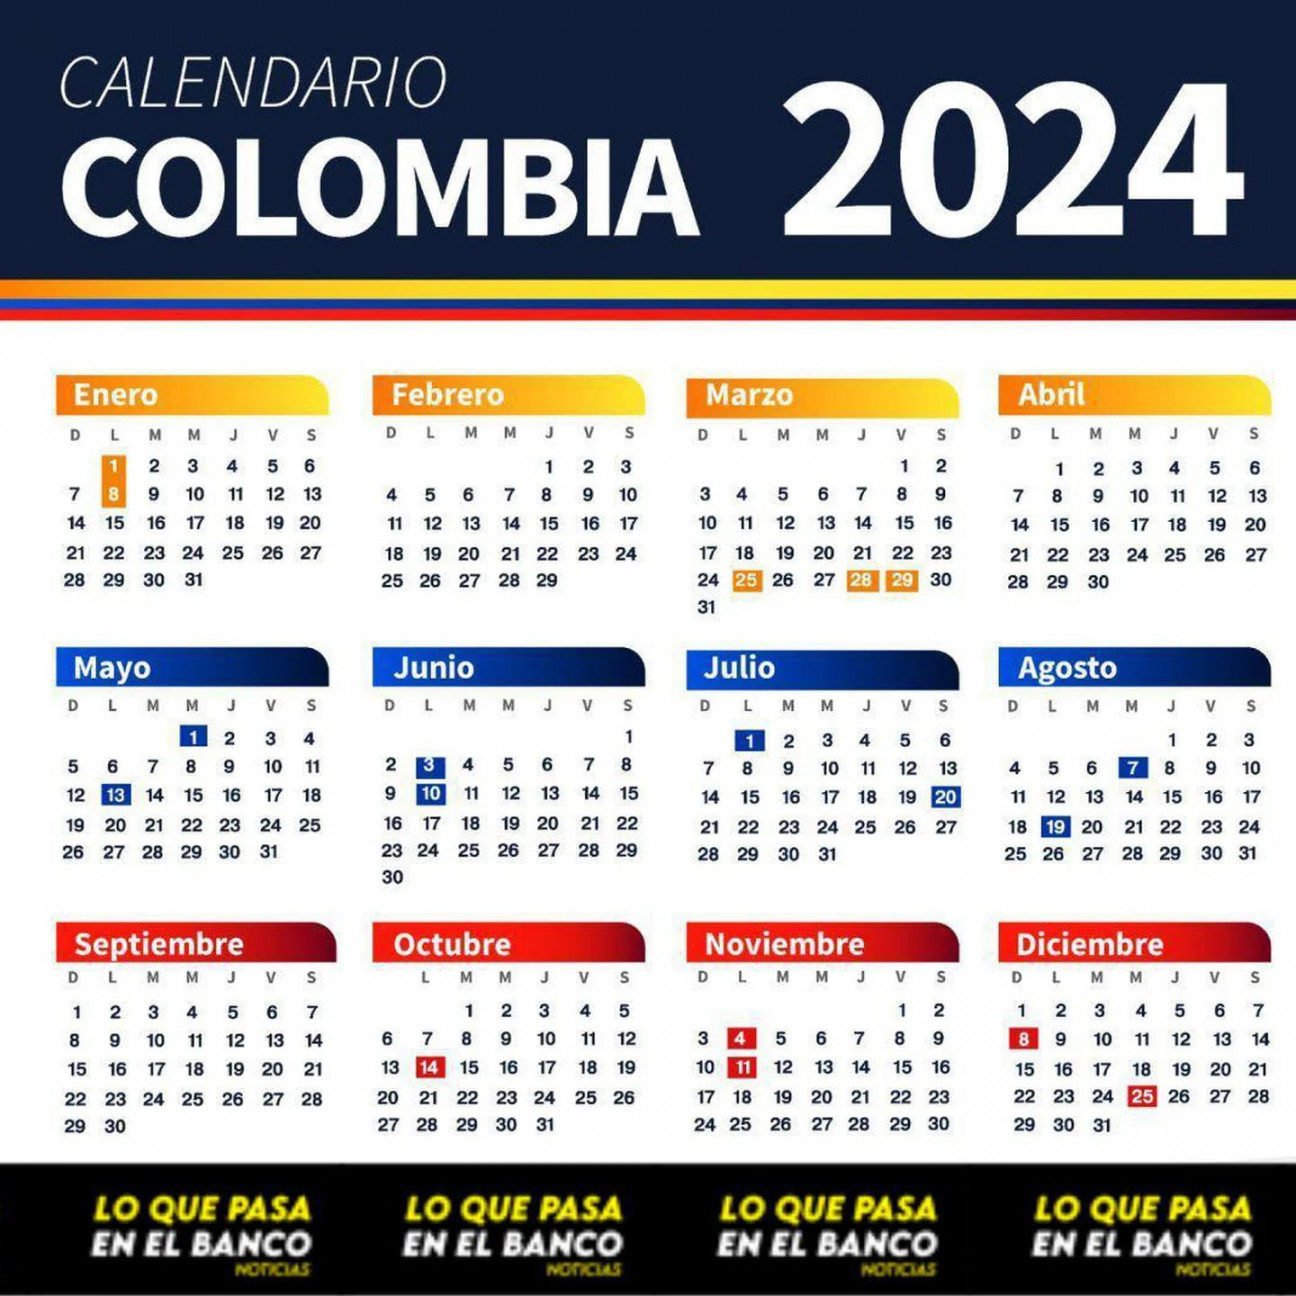 Festivos Colombia : calendario oficial de los días feriados y